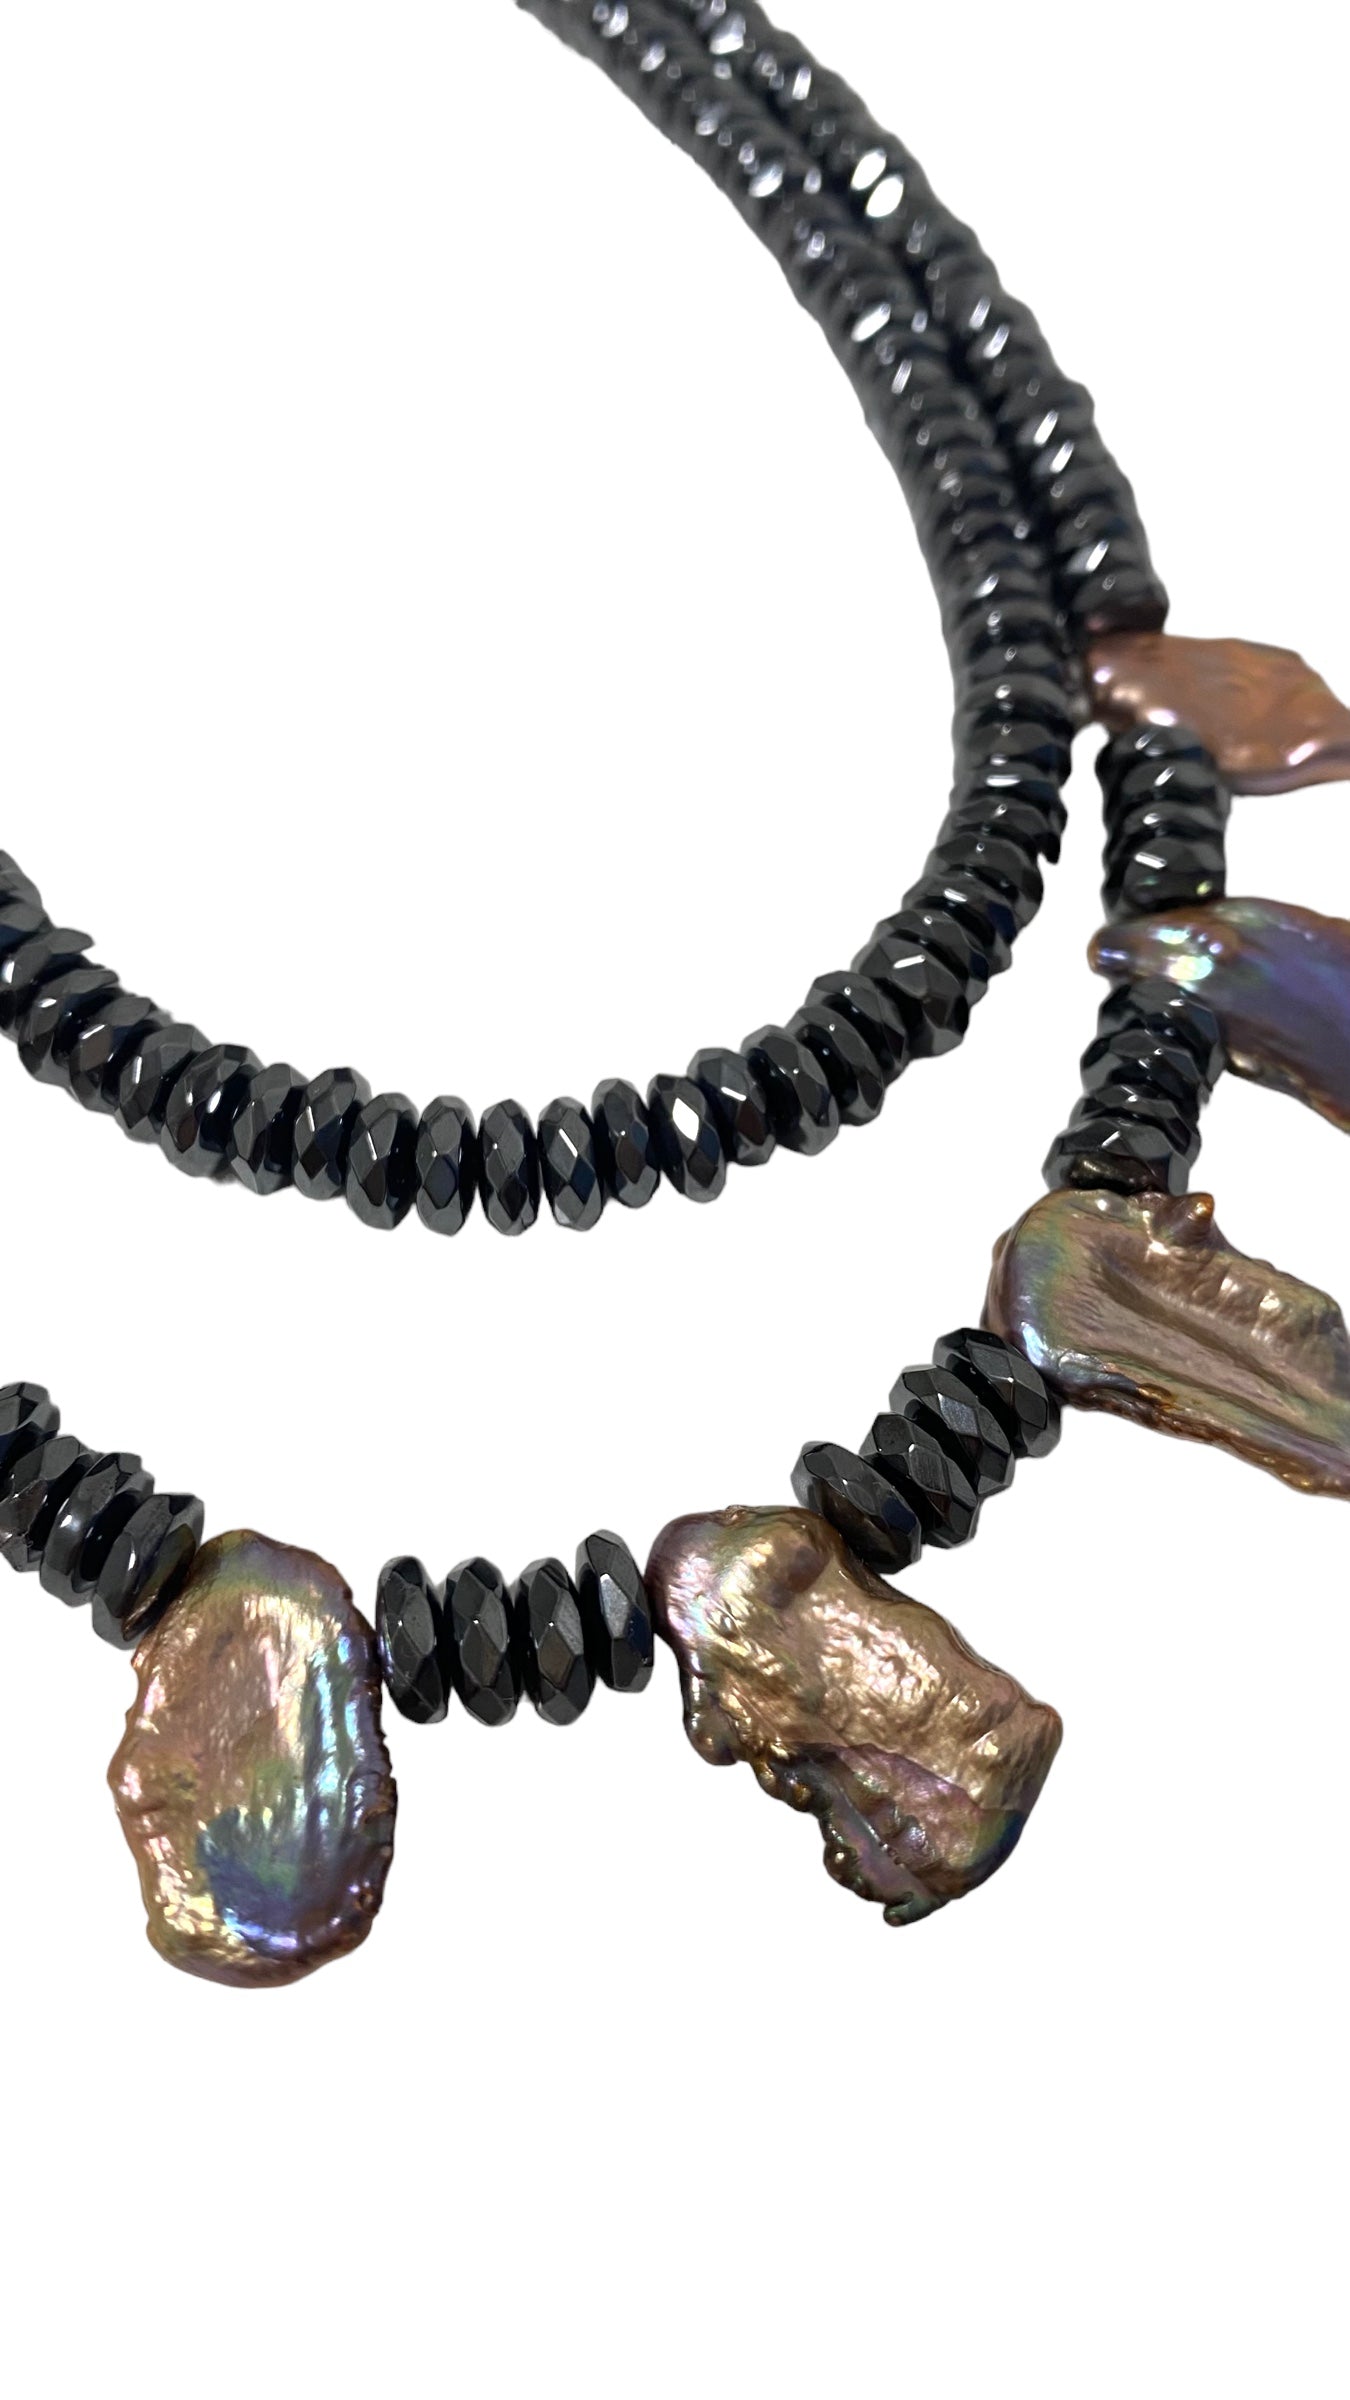 Massive Halskette 2 Reihen schwarze Hämatit Perlen und natürliche Süsswasserperlen in schwarz/blau/violett Schimmer